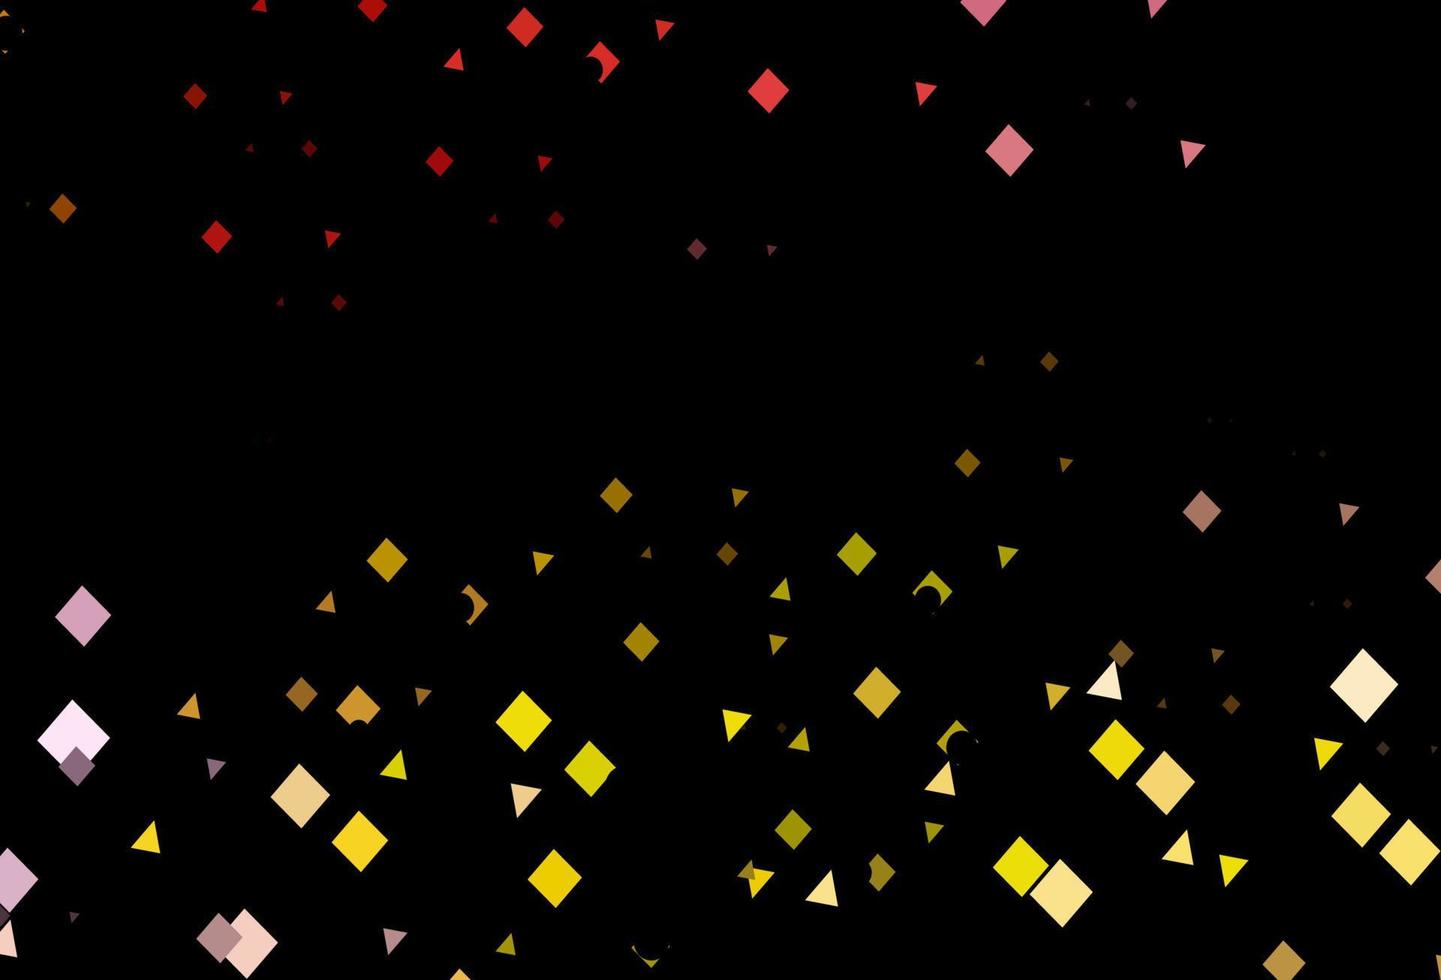 padrão de vetor rosa escuro, amarelo em estilo poligonal com círculos.